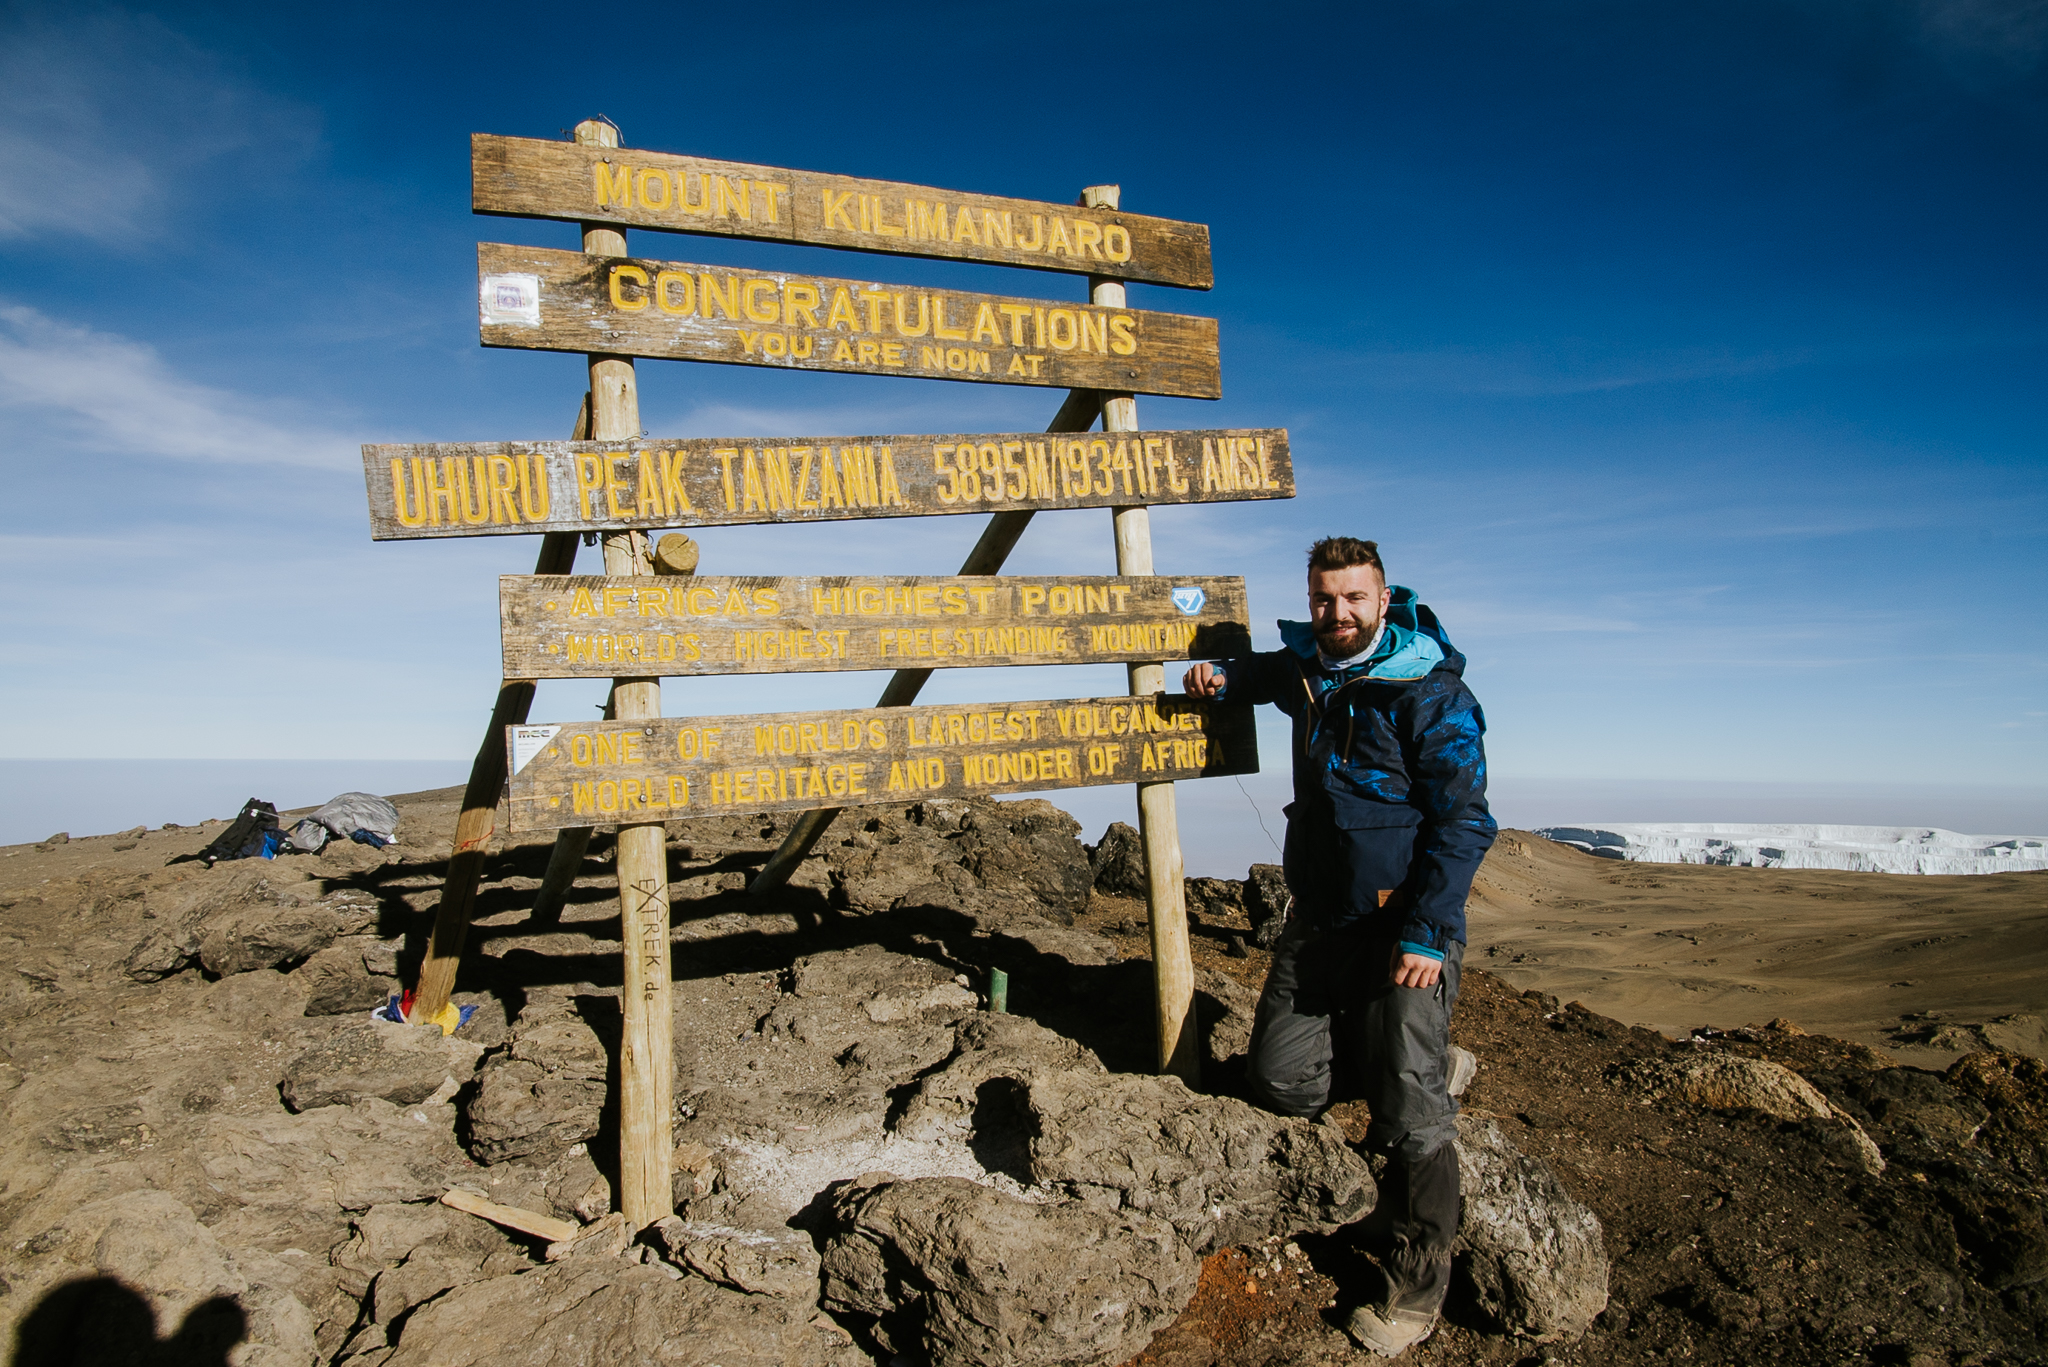 Uhuru peak, túléltük! Józsa Levi a Kilimandzsáró legmagasabb csúcsán! (Fotó: Mózes Tamás)